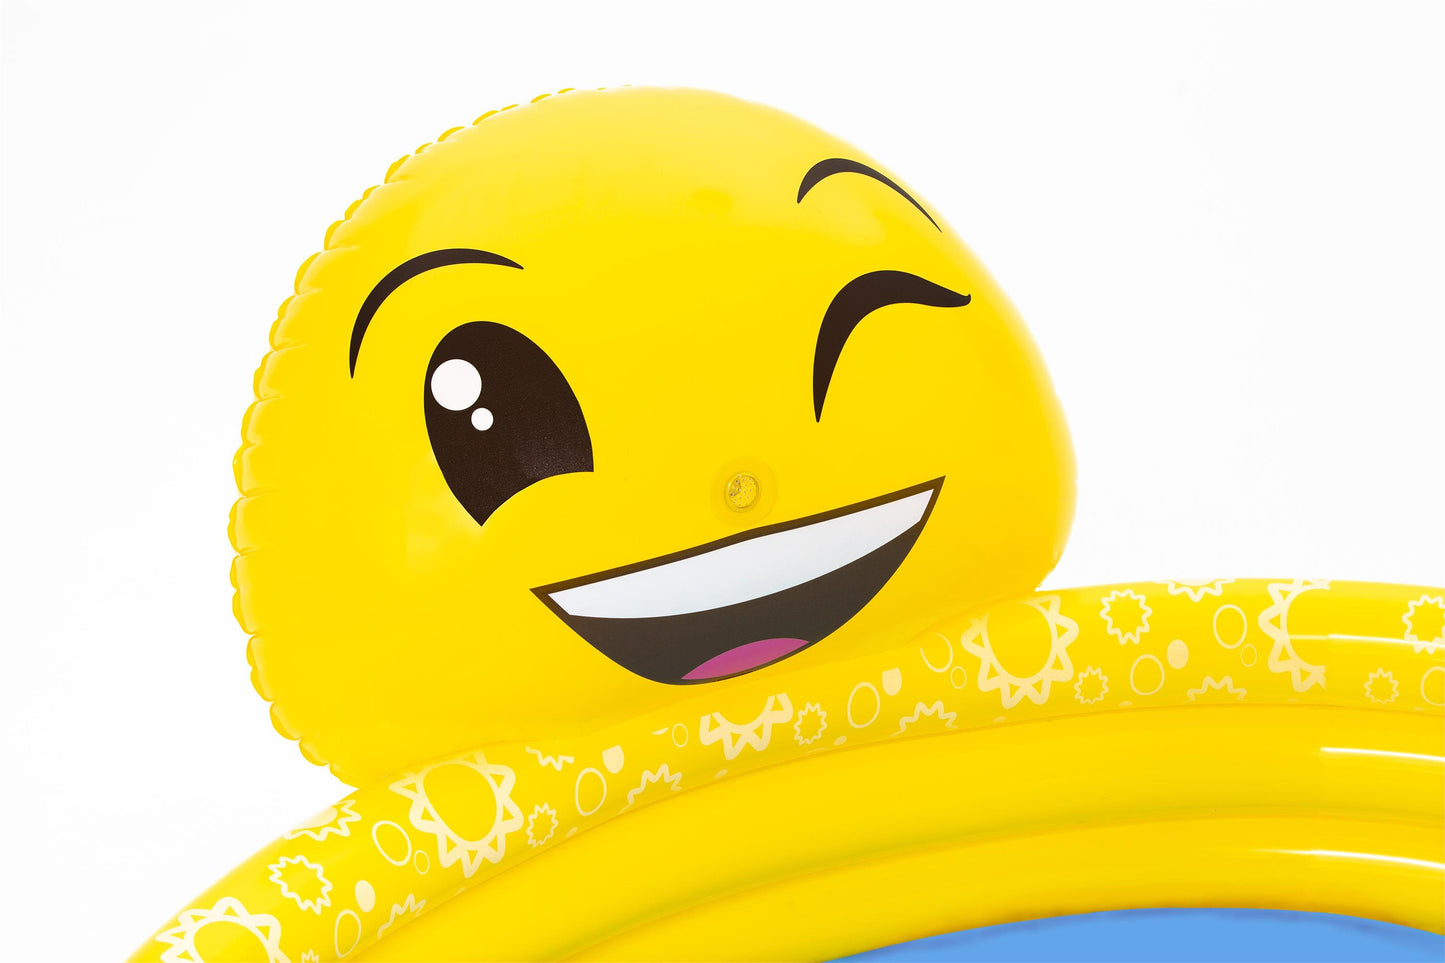 Smile design pool with water sprayer Bestway Summer Smiles Sprayer Pool